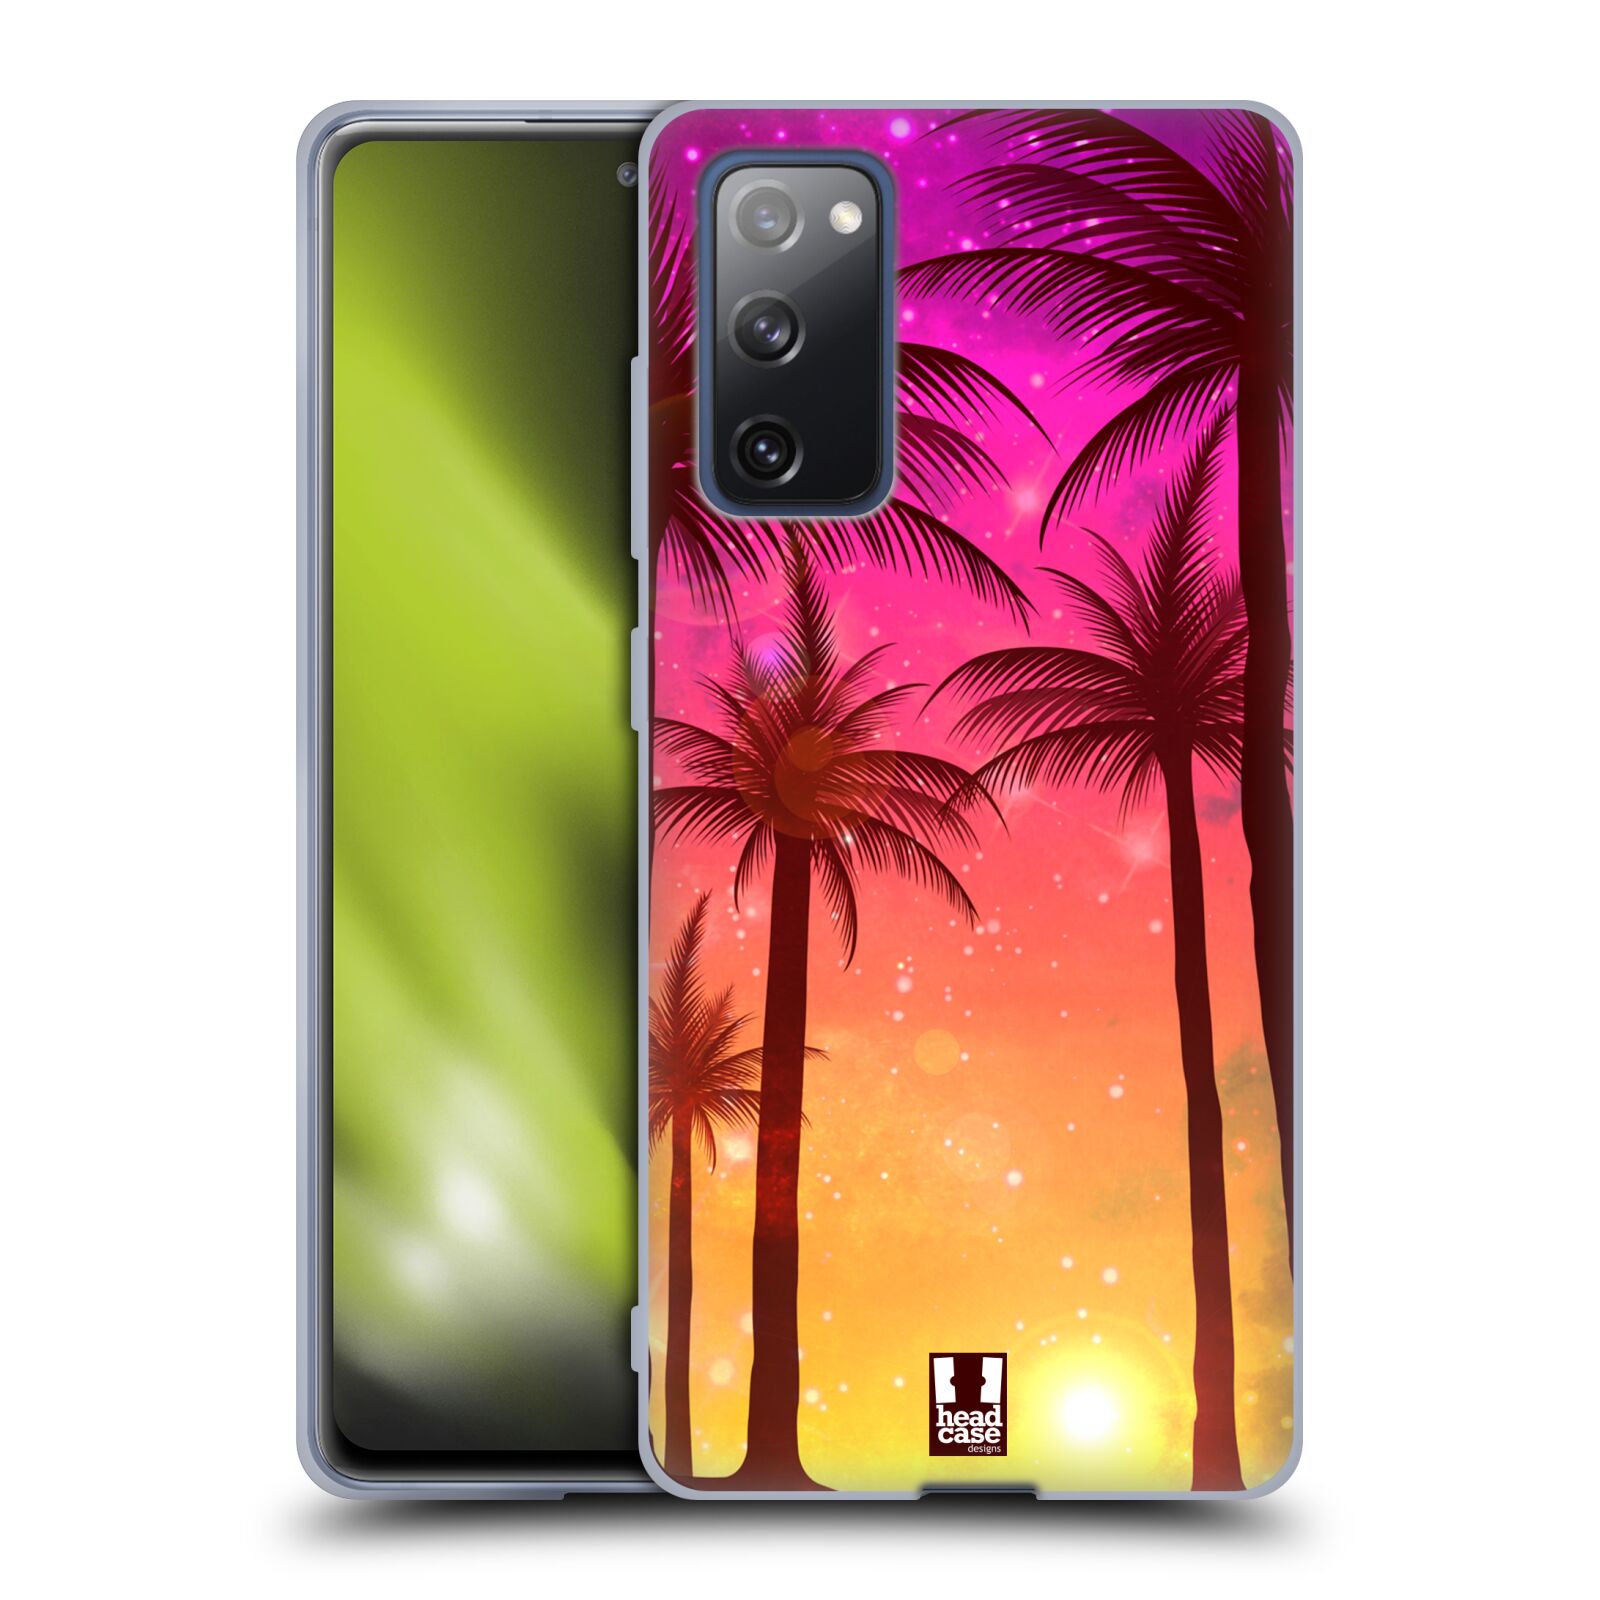 Plastový obal HEAD CASE na mobil Samsung Galaxy S20 FE / S20 FE 5G vzor Kreslený motiv silueta moře a palmy RŮŽOVÁ